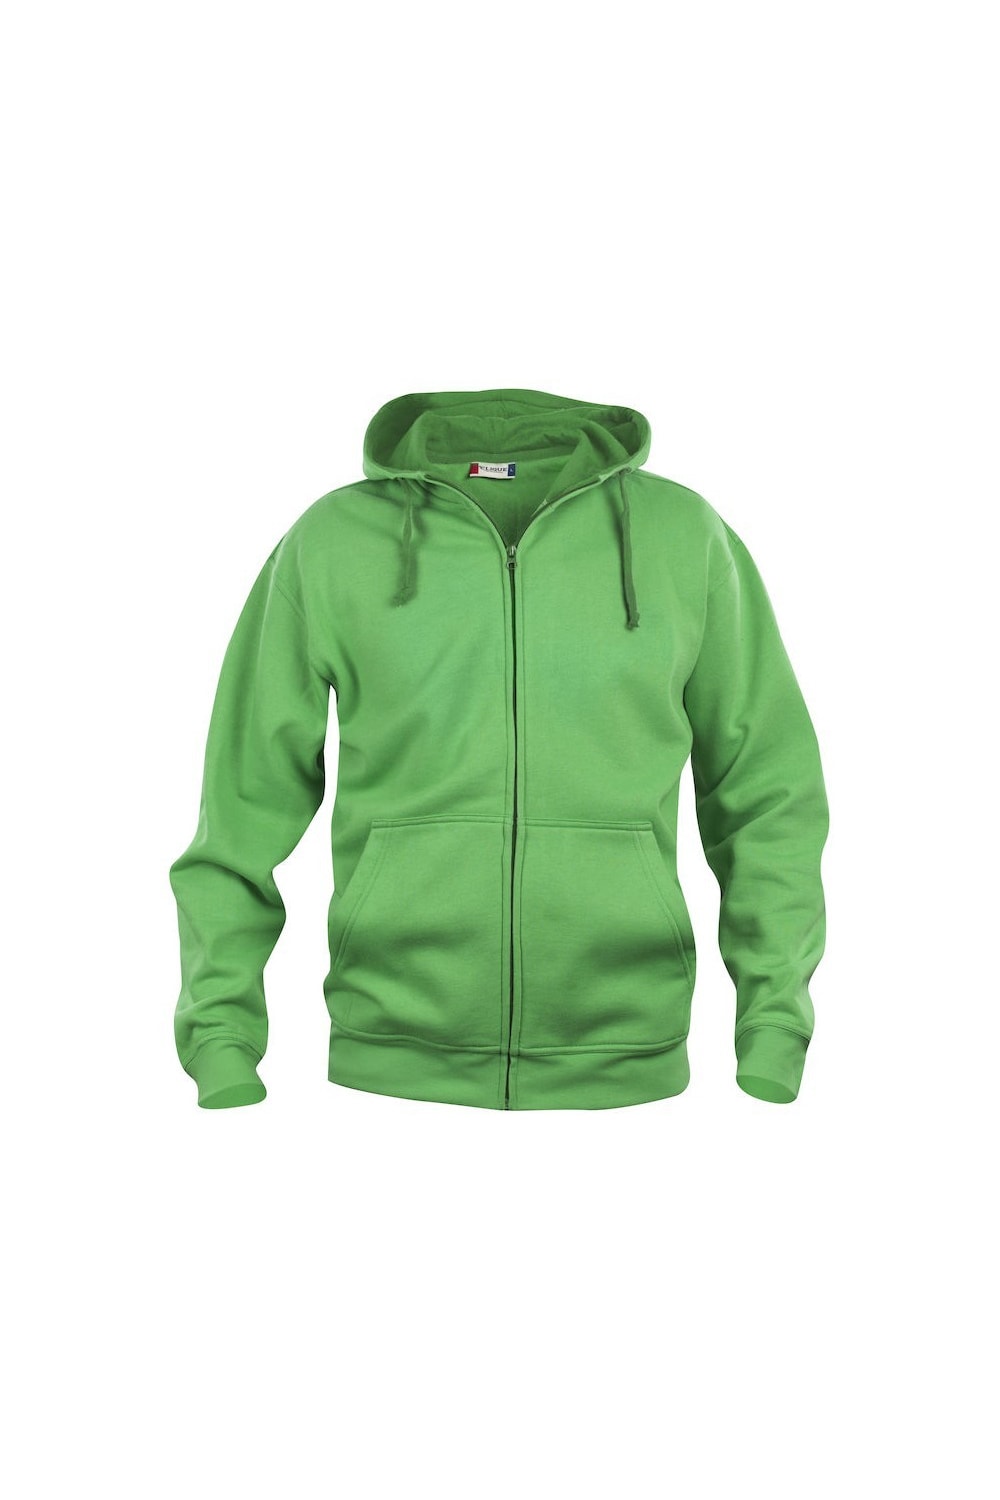 Mens Basic Full Zip Hoodie - Apple Green